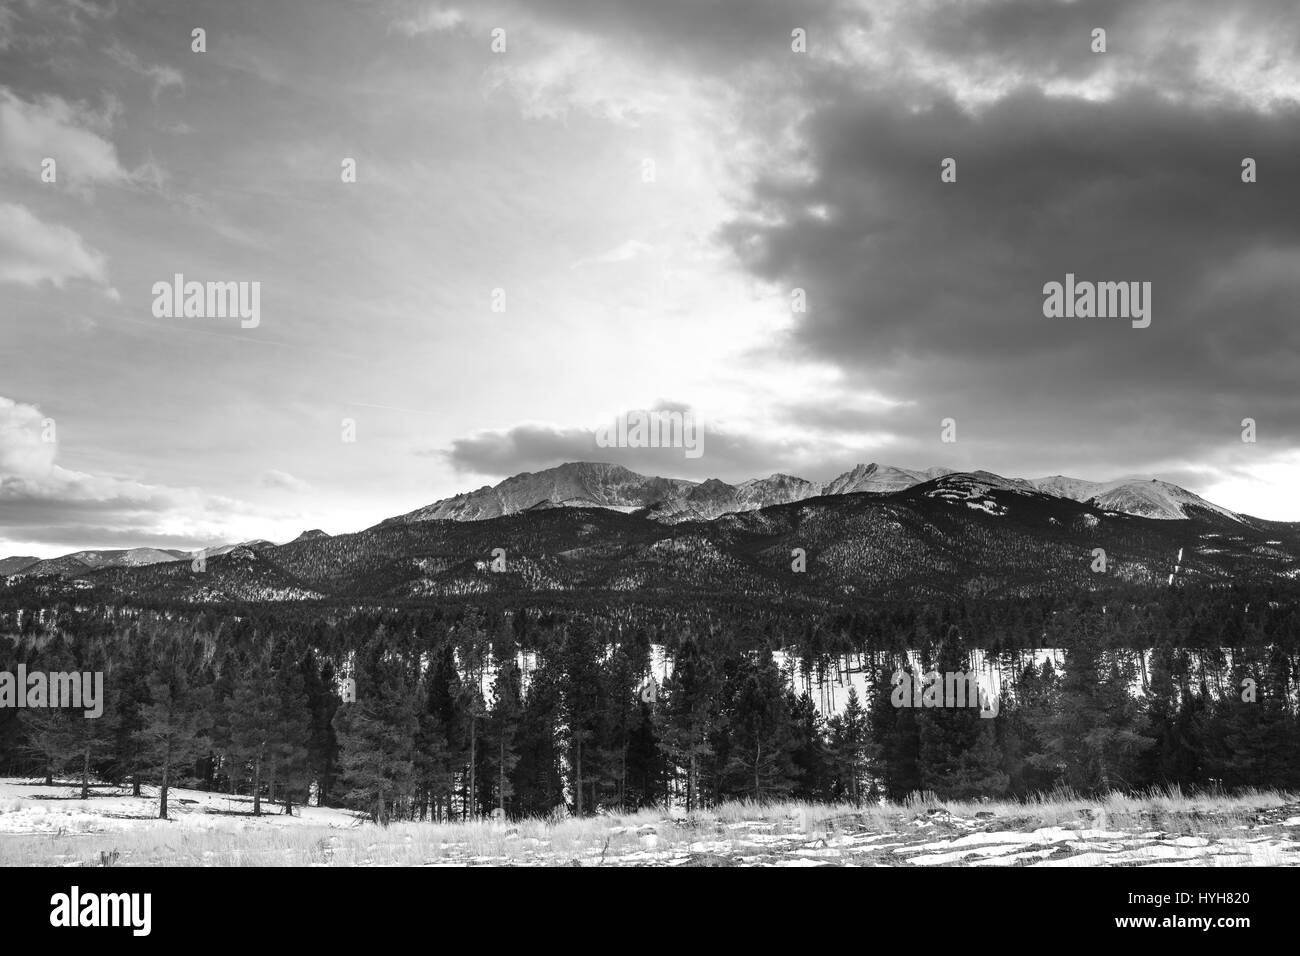 Schneebedeckte Gebirge auf einem privaten Grundstück mit einem kein Hausfriedensbruch Schild. Die Zufahrt führt zu einem offenen Feld mit Panoramablick auf die Berge. Stockfoto